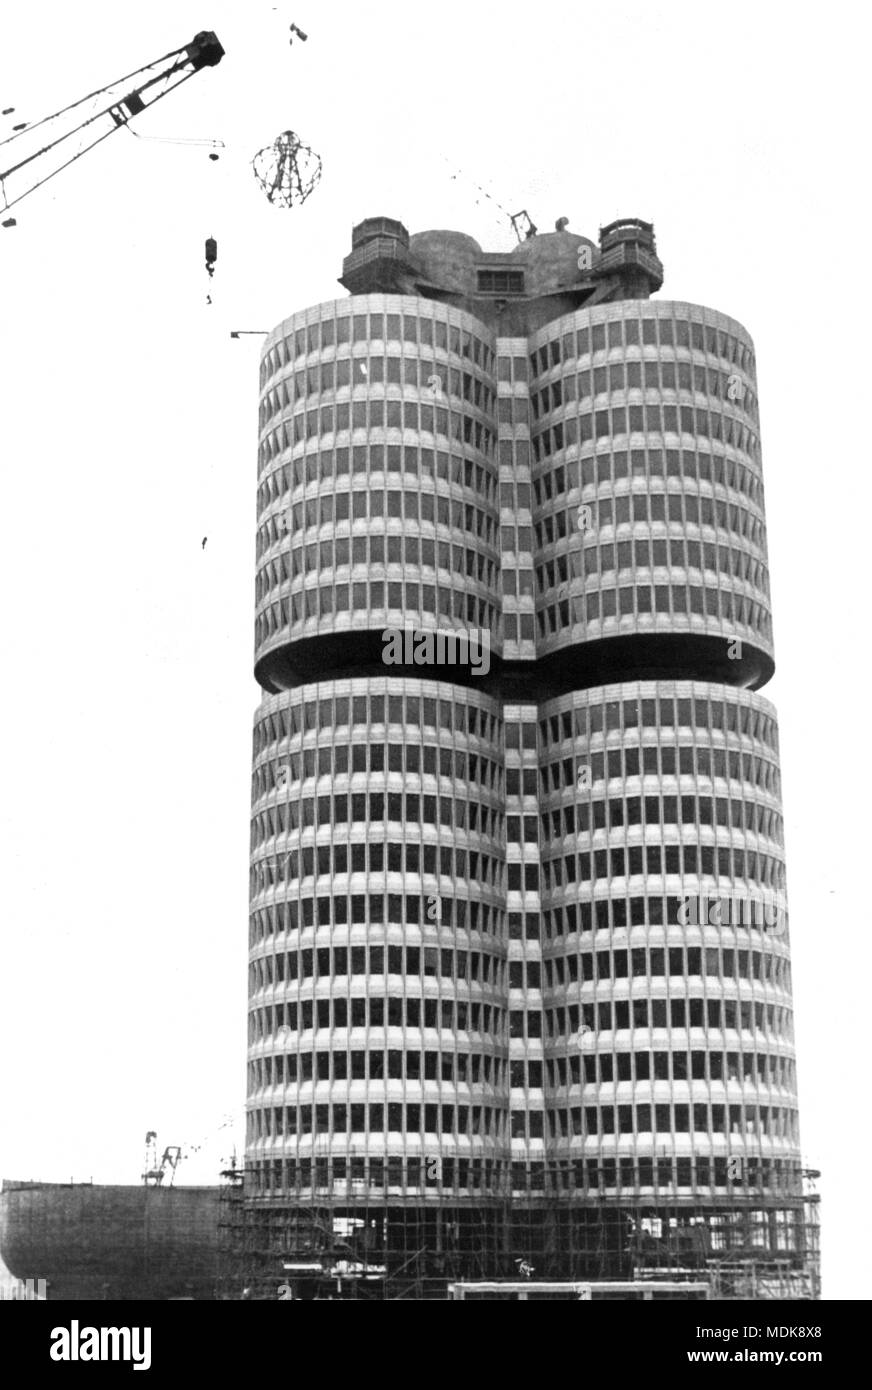 Nach einer Bauzeit von eineinhalb Jahren, die Richtkrone schwebt am 07.12.1971 über das neue Gebäude der BMW-Verwaltungsgebäude in München. Das Gebäude, das besteht aus vier Klee-förmigen Zylinder, soll Anfang 1973 fertig sein. Die Baukosten belaufen sich auf rund 100 Millionen Mark. (C) dpa-Bericht | Verwendung weltweit Stockfoto